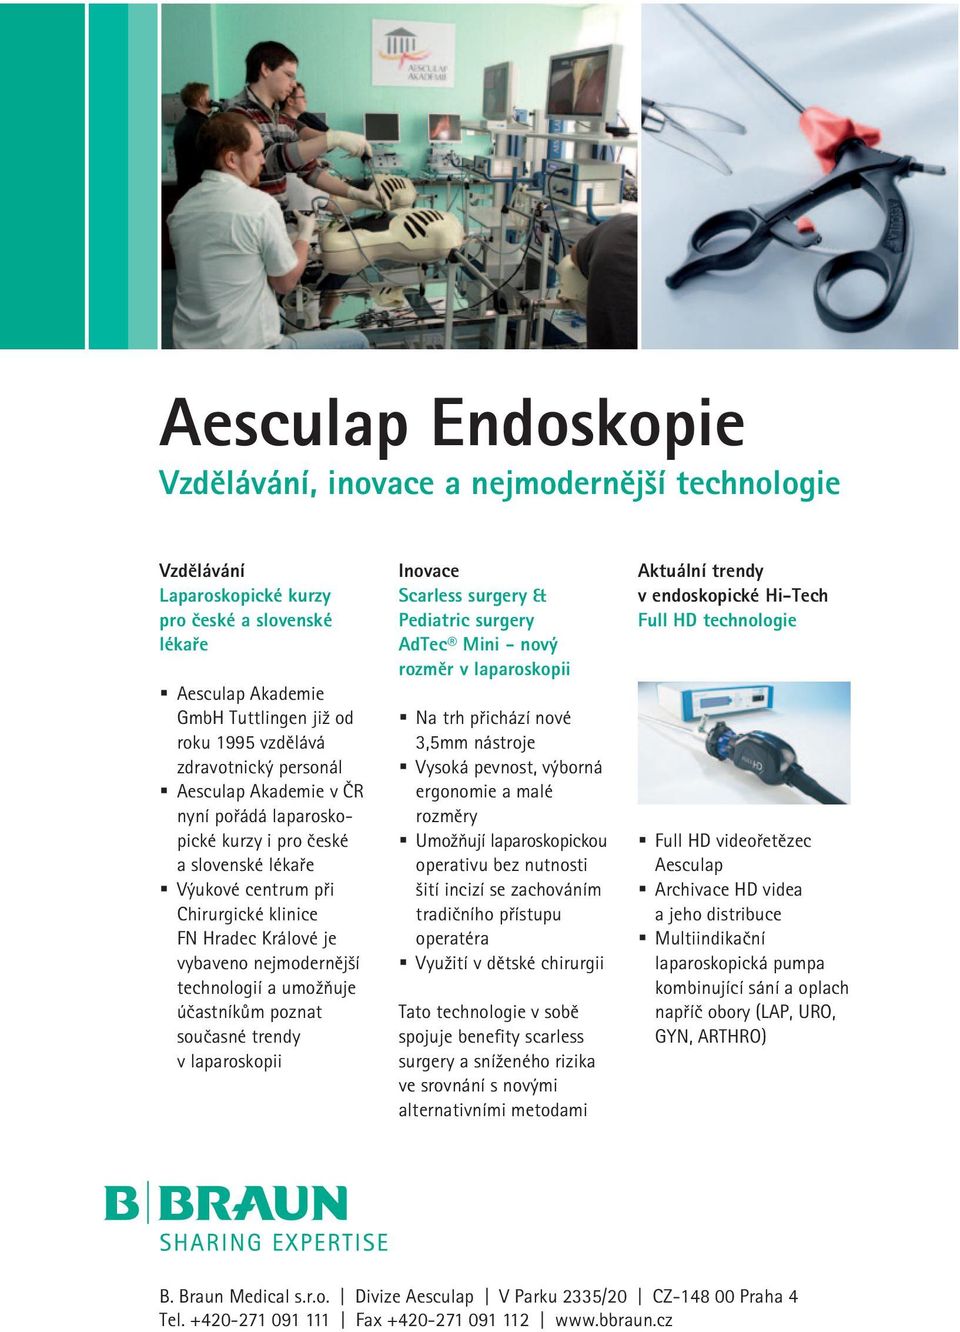 technologií a umožňuje účastníkům poznat současné trendy v laparoskopii Inovace Scarless surgery & Pediatric surgery AdTec Mini - nový rozměr v laparoskopii Na trh přichází nové 3,5mm nástroje Vysoká